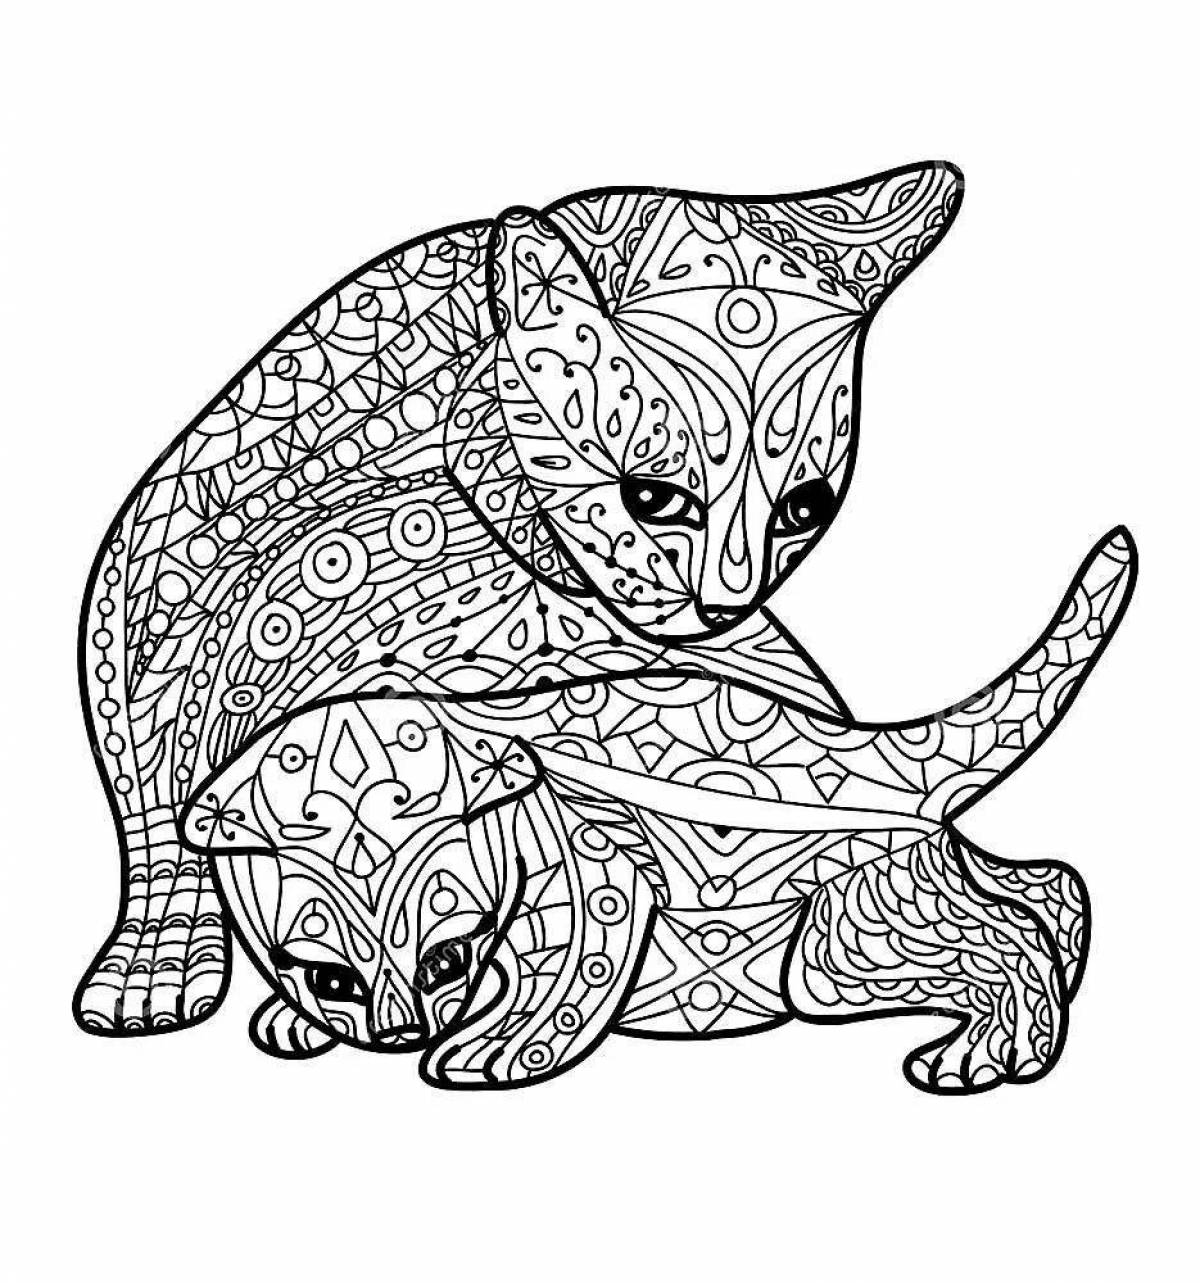 Coloring page joyful cat mandala